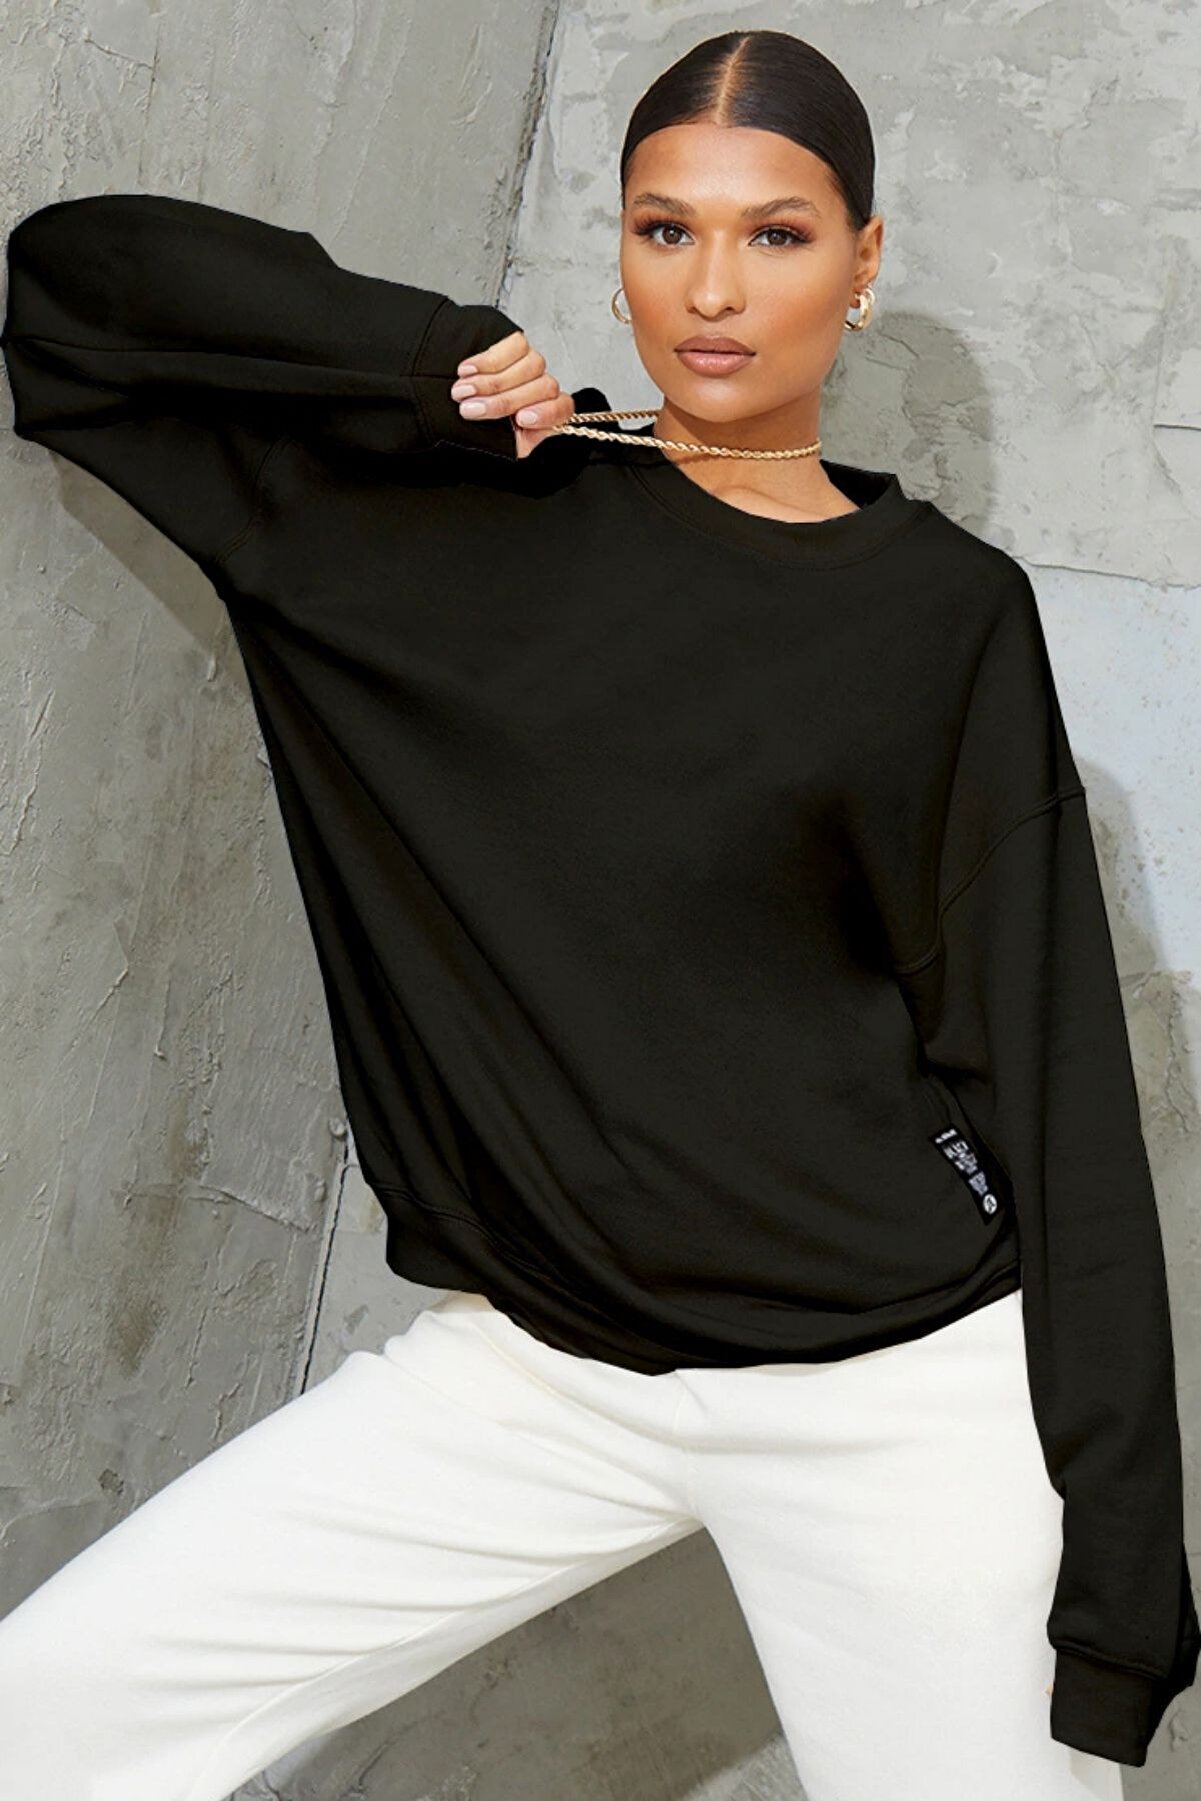 Millionaire Kadın Siyah Basic 0 Sıfır Yaka Baskısız Düz Oversize Salaş Bol Kesim Polar Sweatshirt